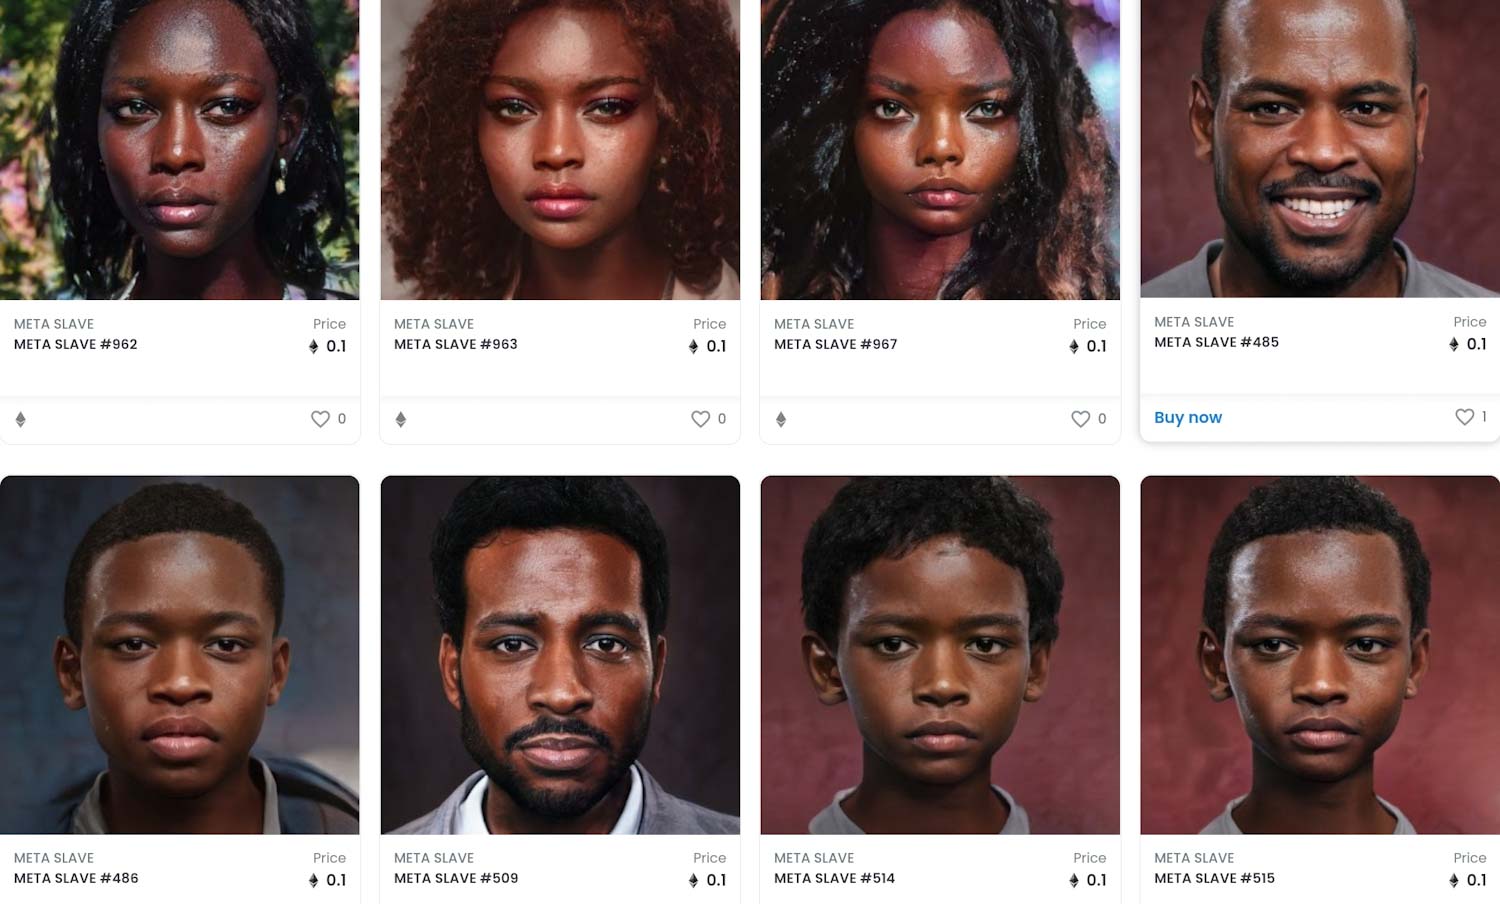 Grupo vende fotos de pessoas negras como “NFTs de escravos” e é criticado